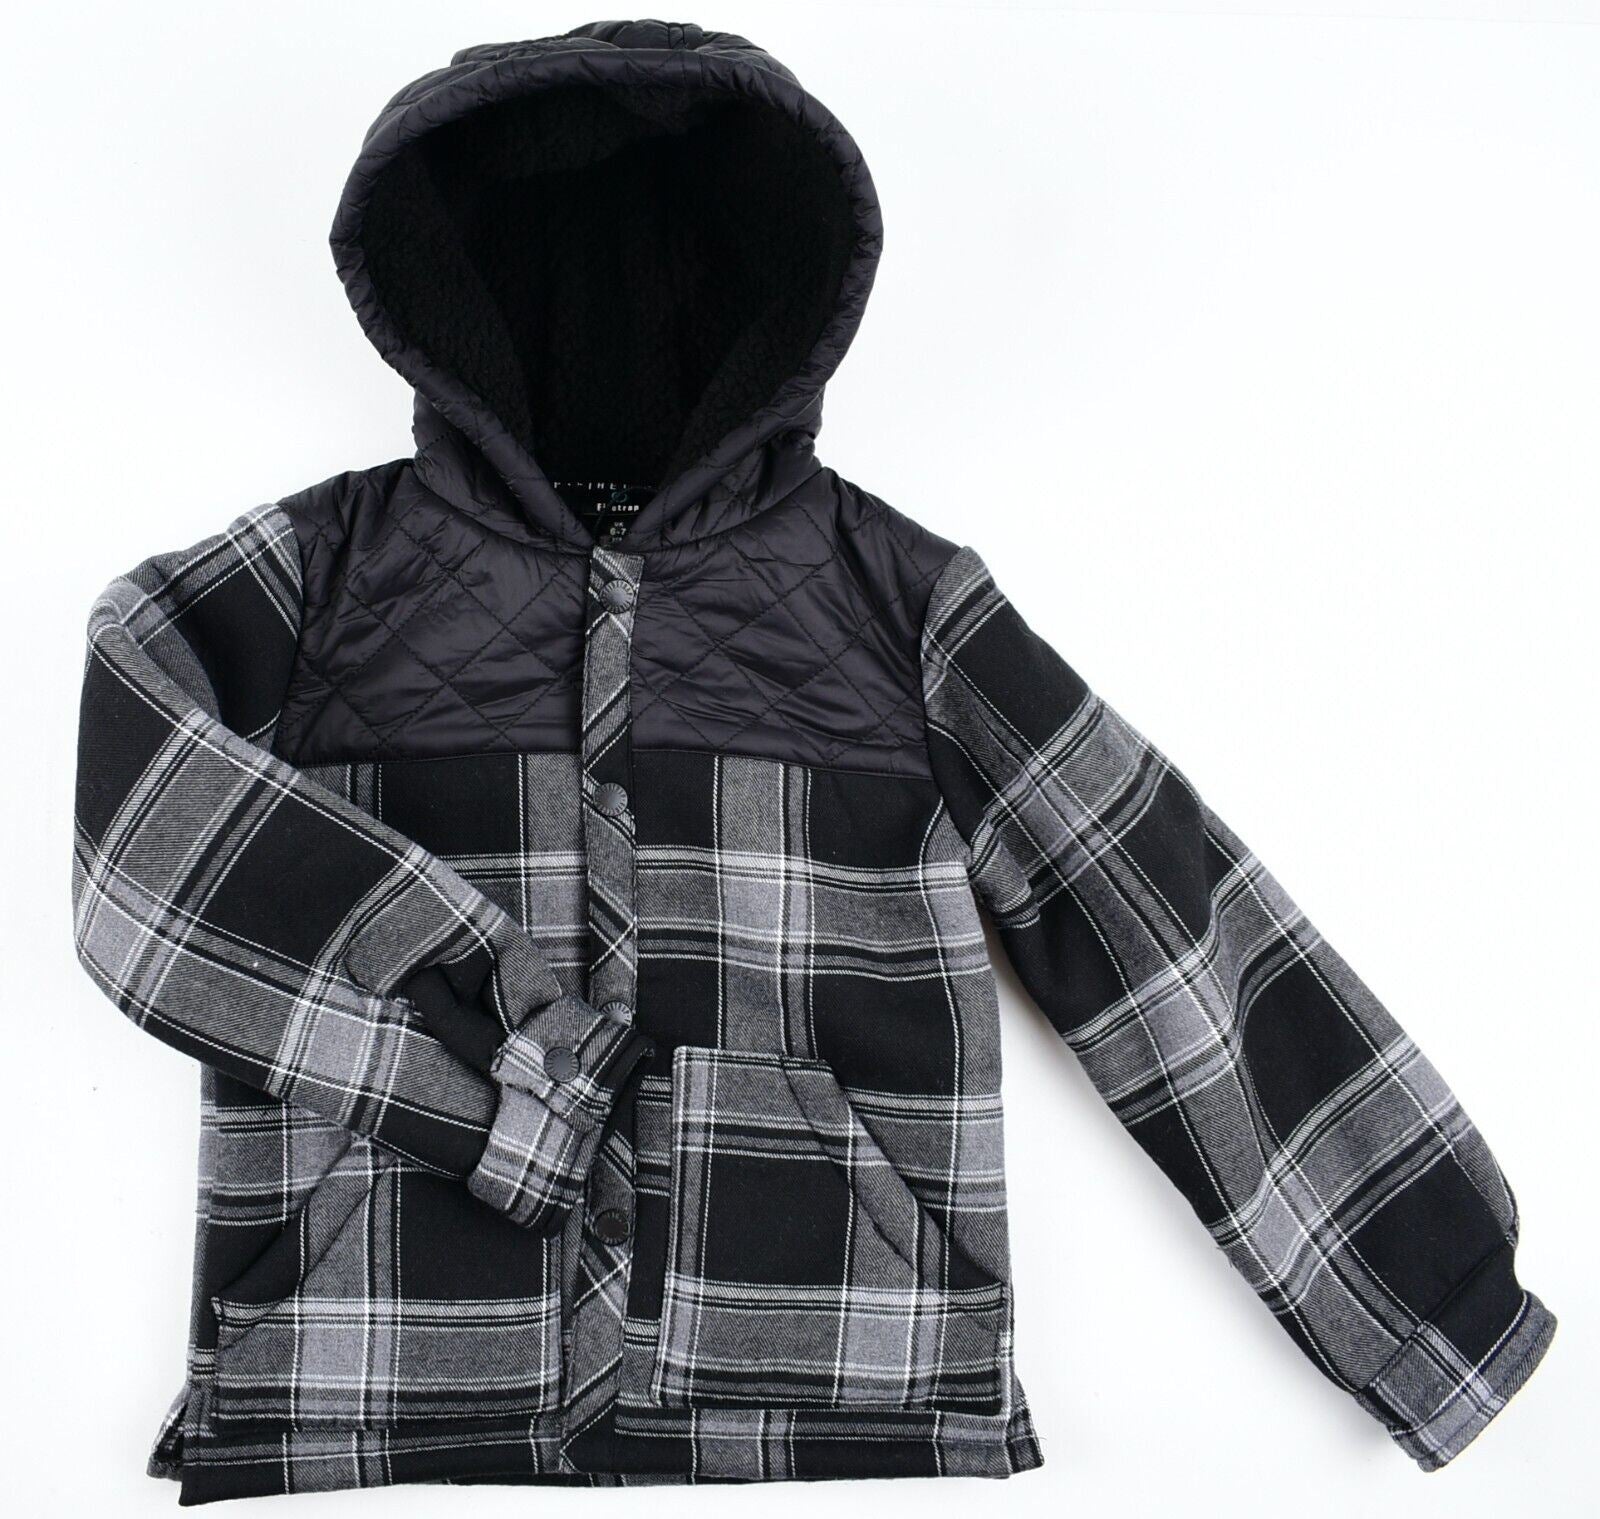 FIRETRAP Boys Kids Teddy Fleece Lined Shirt Jacket, Grey-Black, size 6-7 years